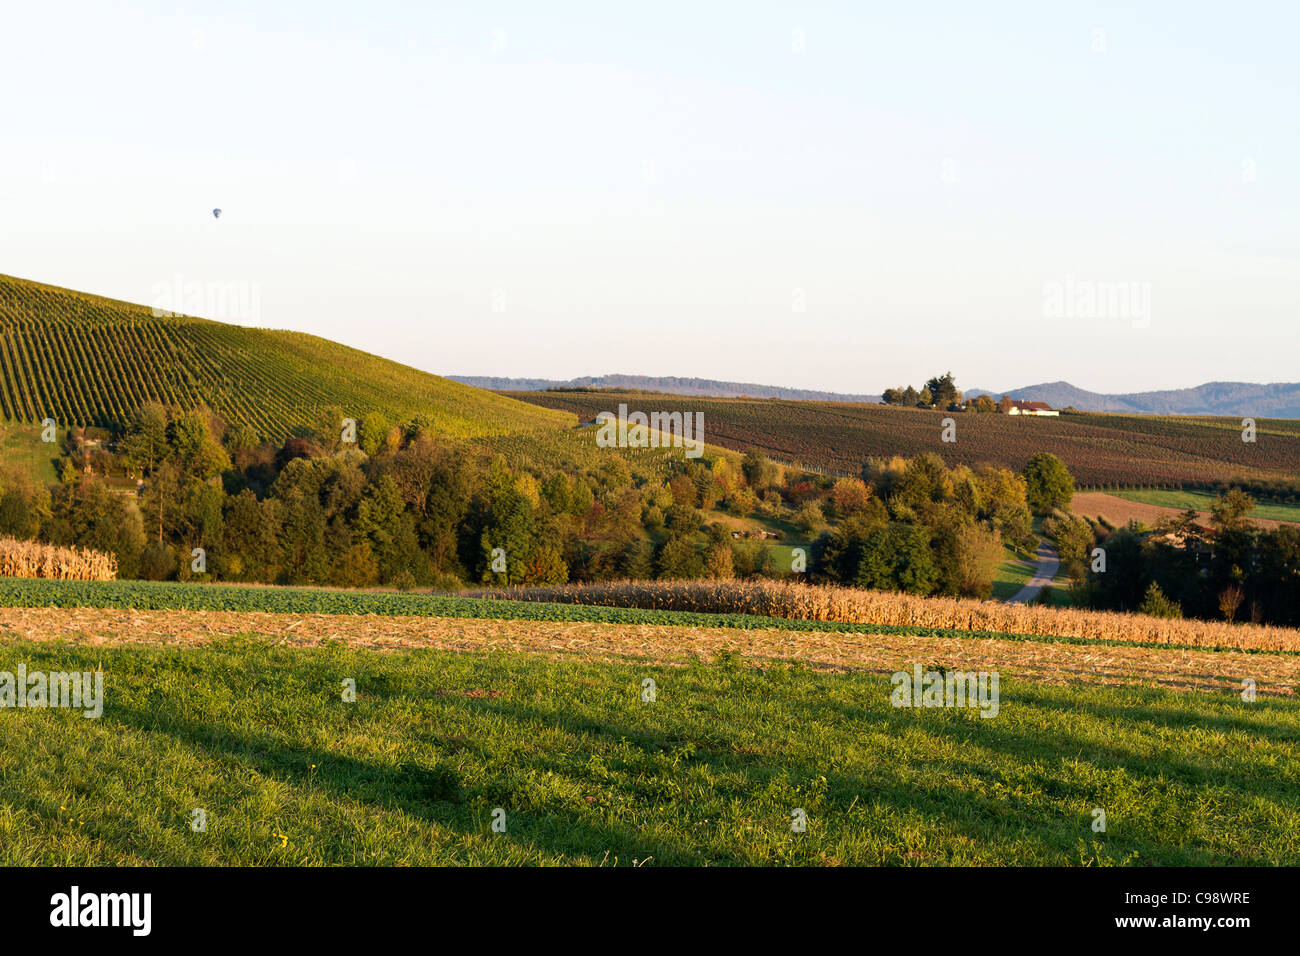 El paisaje agrícola, con viñedos y huertos en el sur de Alemania Foto de stock